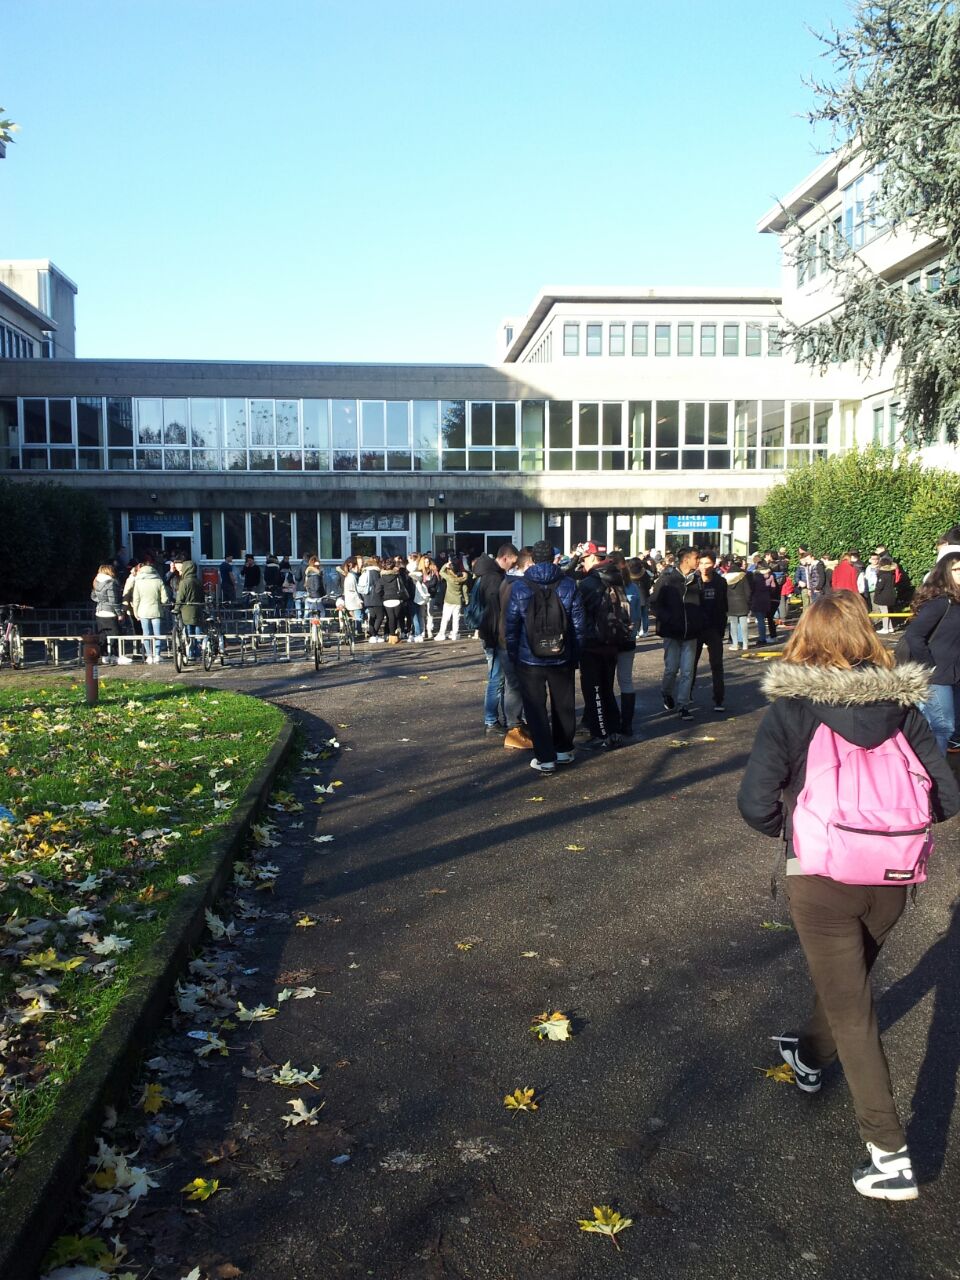 ULTIMORA: Parco Nord ancora al freddo, studenti in agitazione